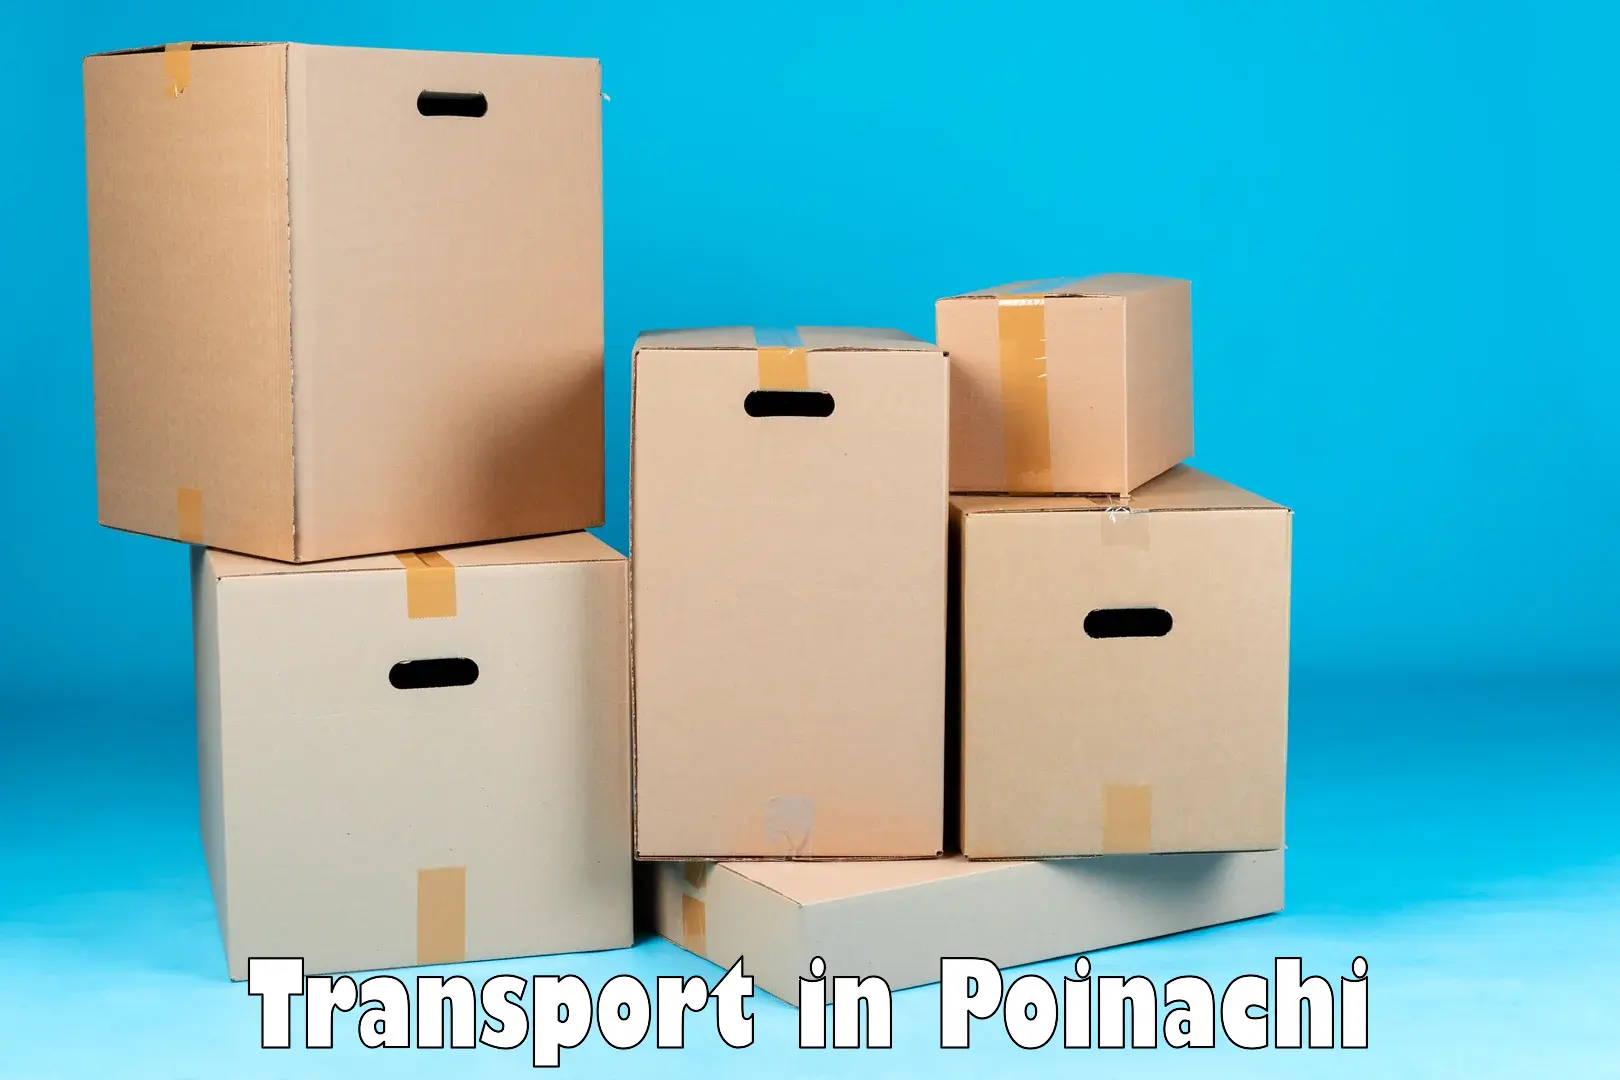 Furniture transport service in Poinachi